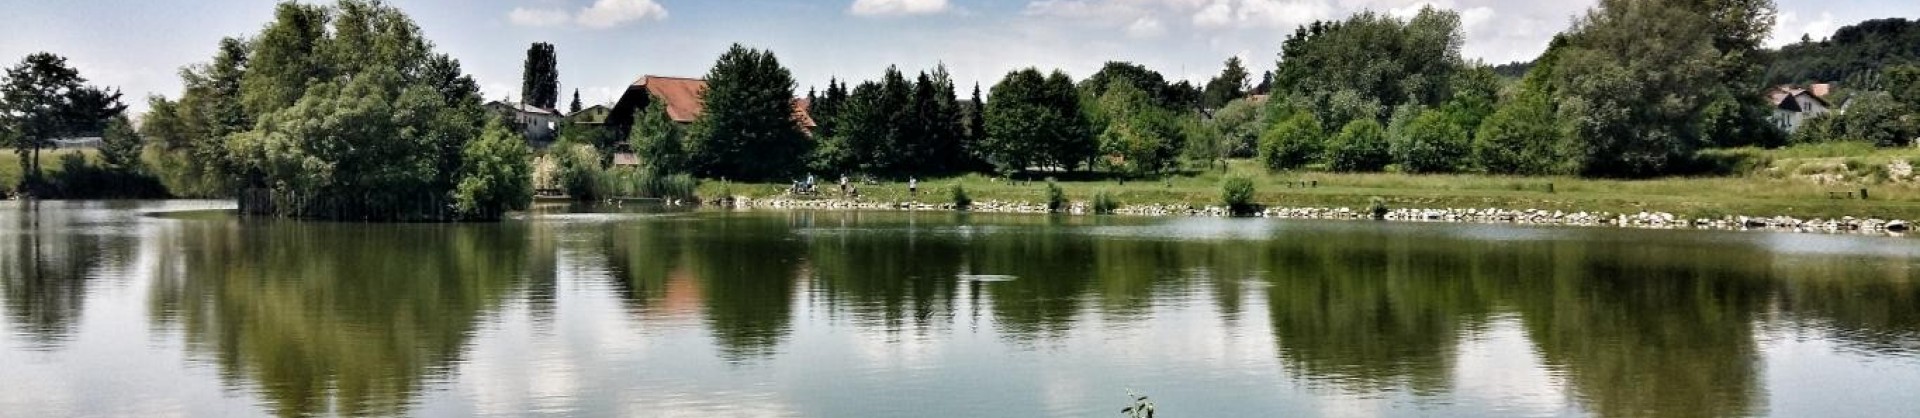 Rogoznisko jezero 4 sl